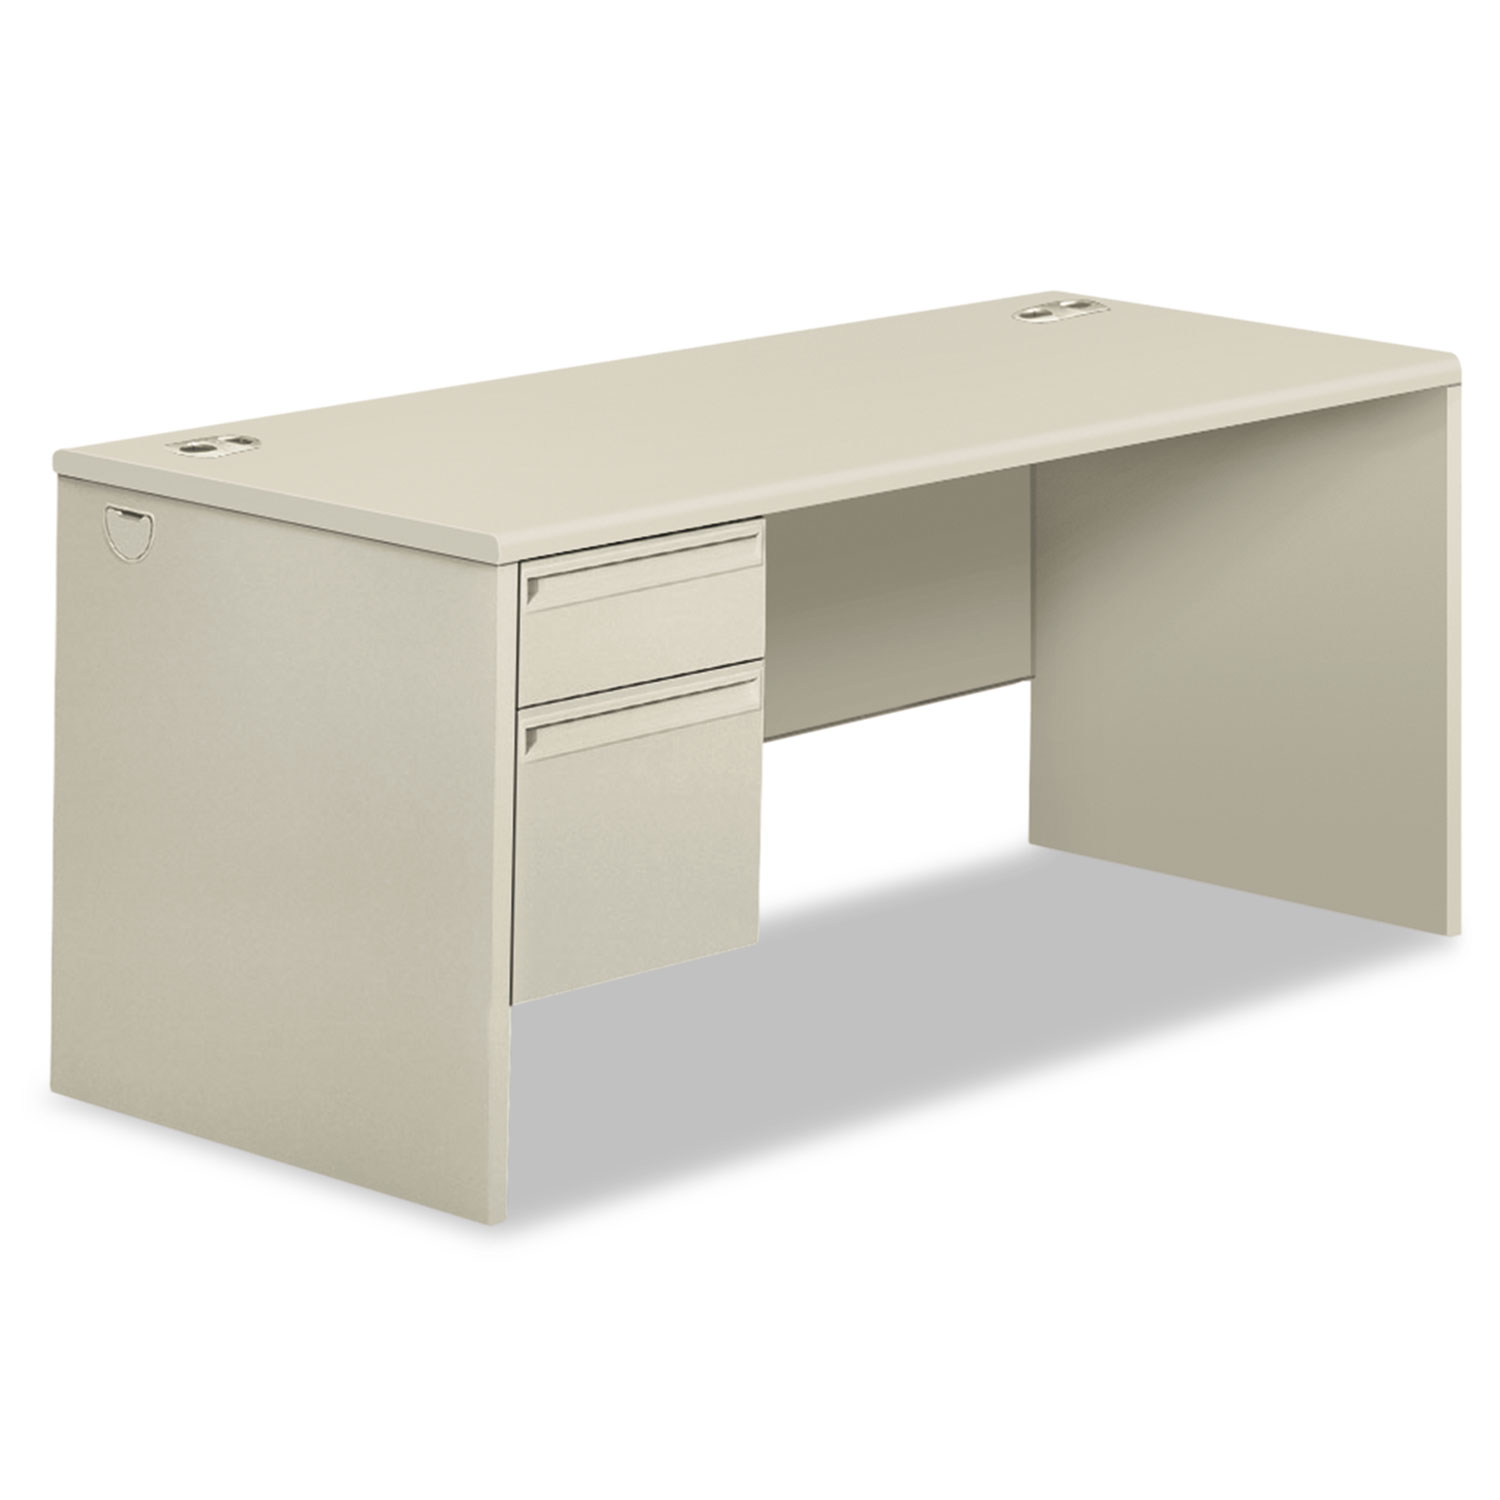 38000 Series Right Pedestal Desk, 66w x 30d x 29-1/2h, Light Gray